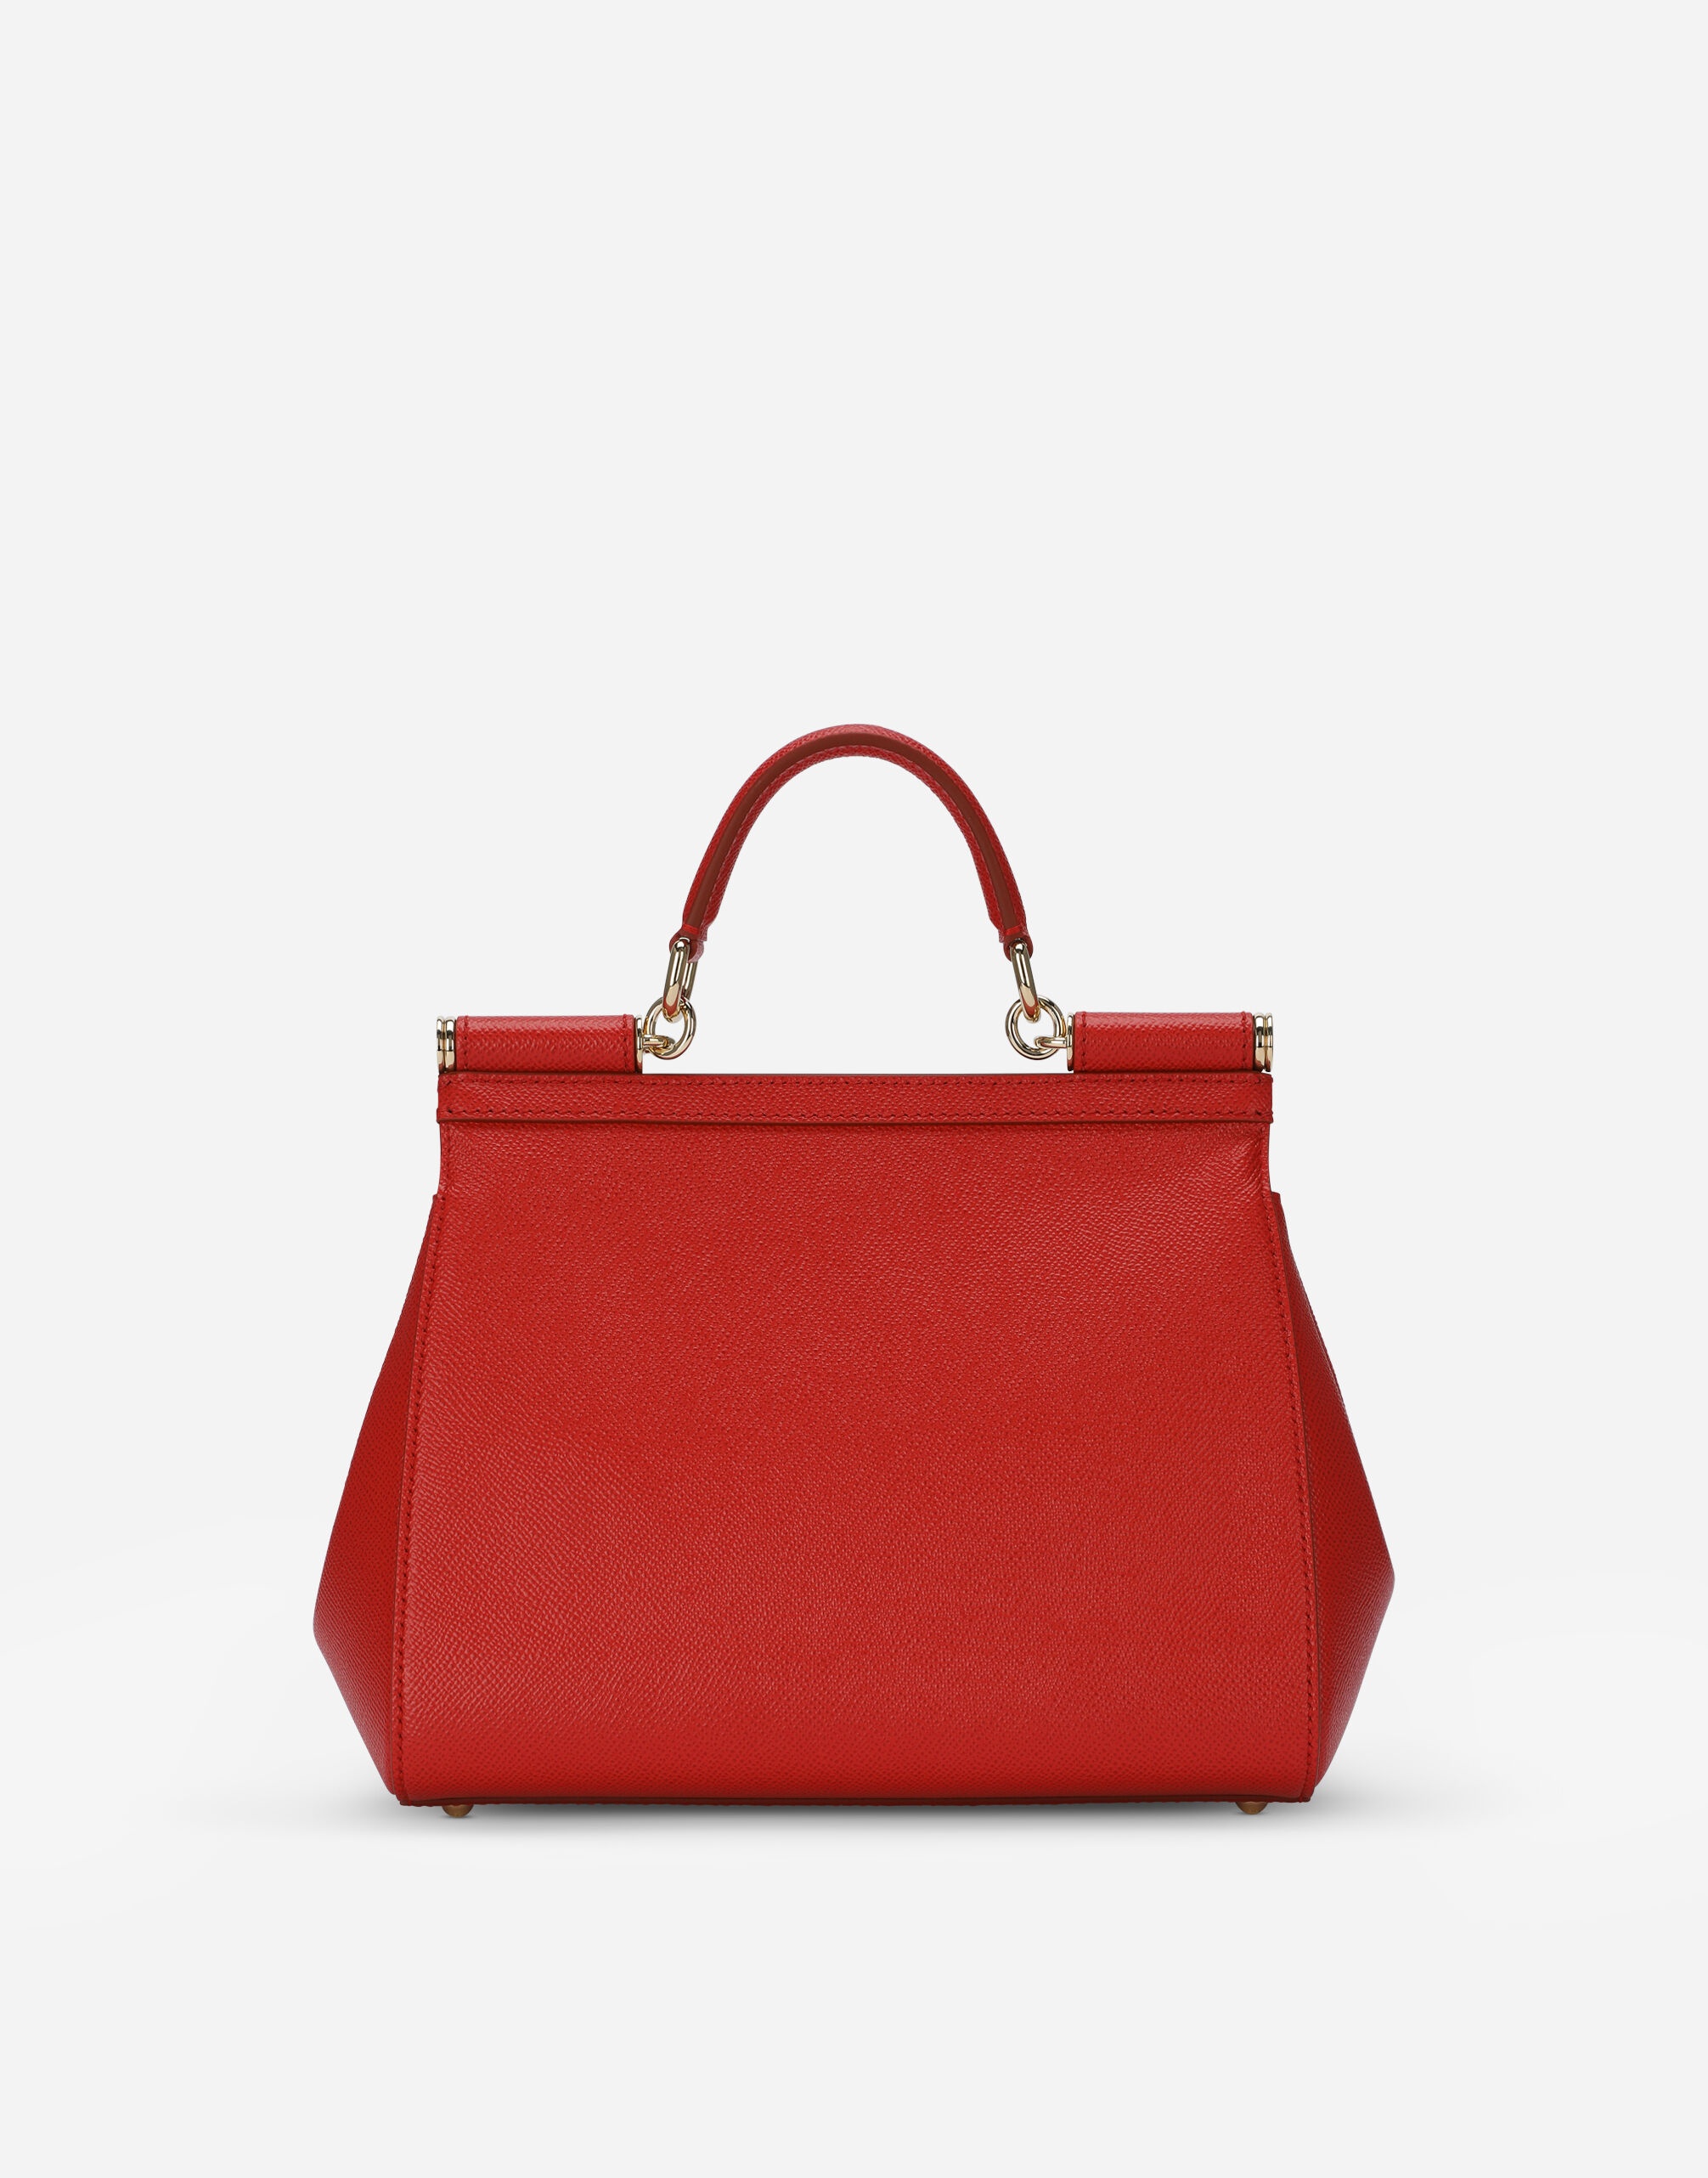 Medium Sicily handbag in dauphine leather - 4